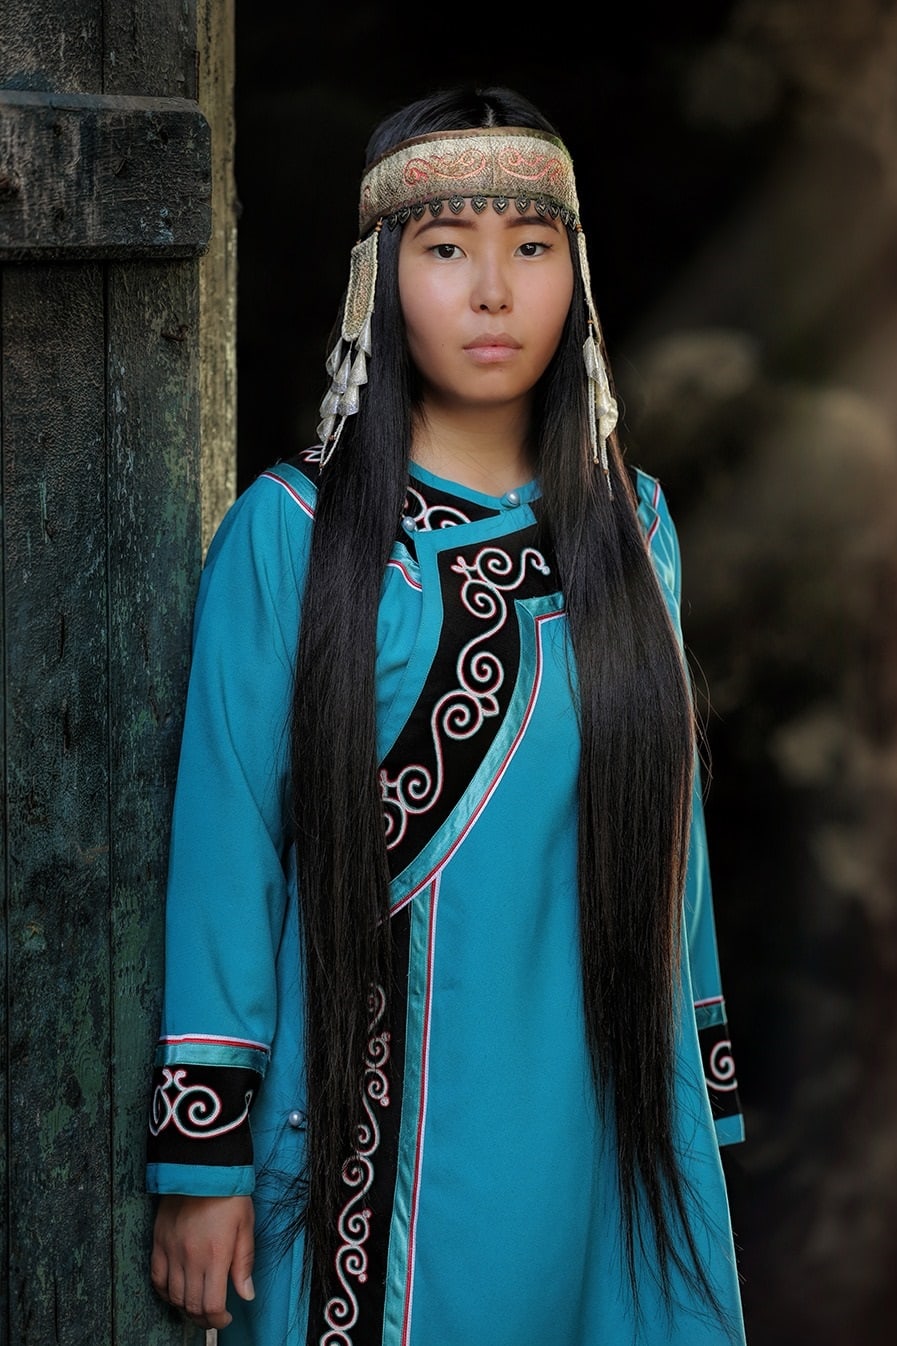 17 представителей коренных народностей Сибири: фотосессия в национальных костюмах 57